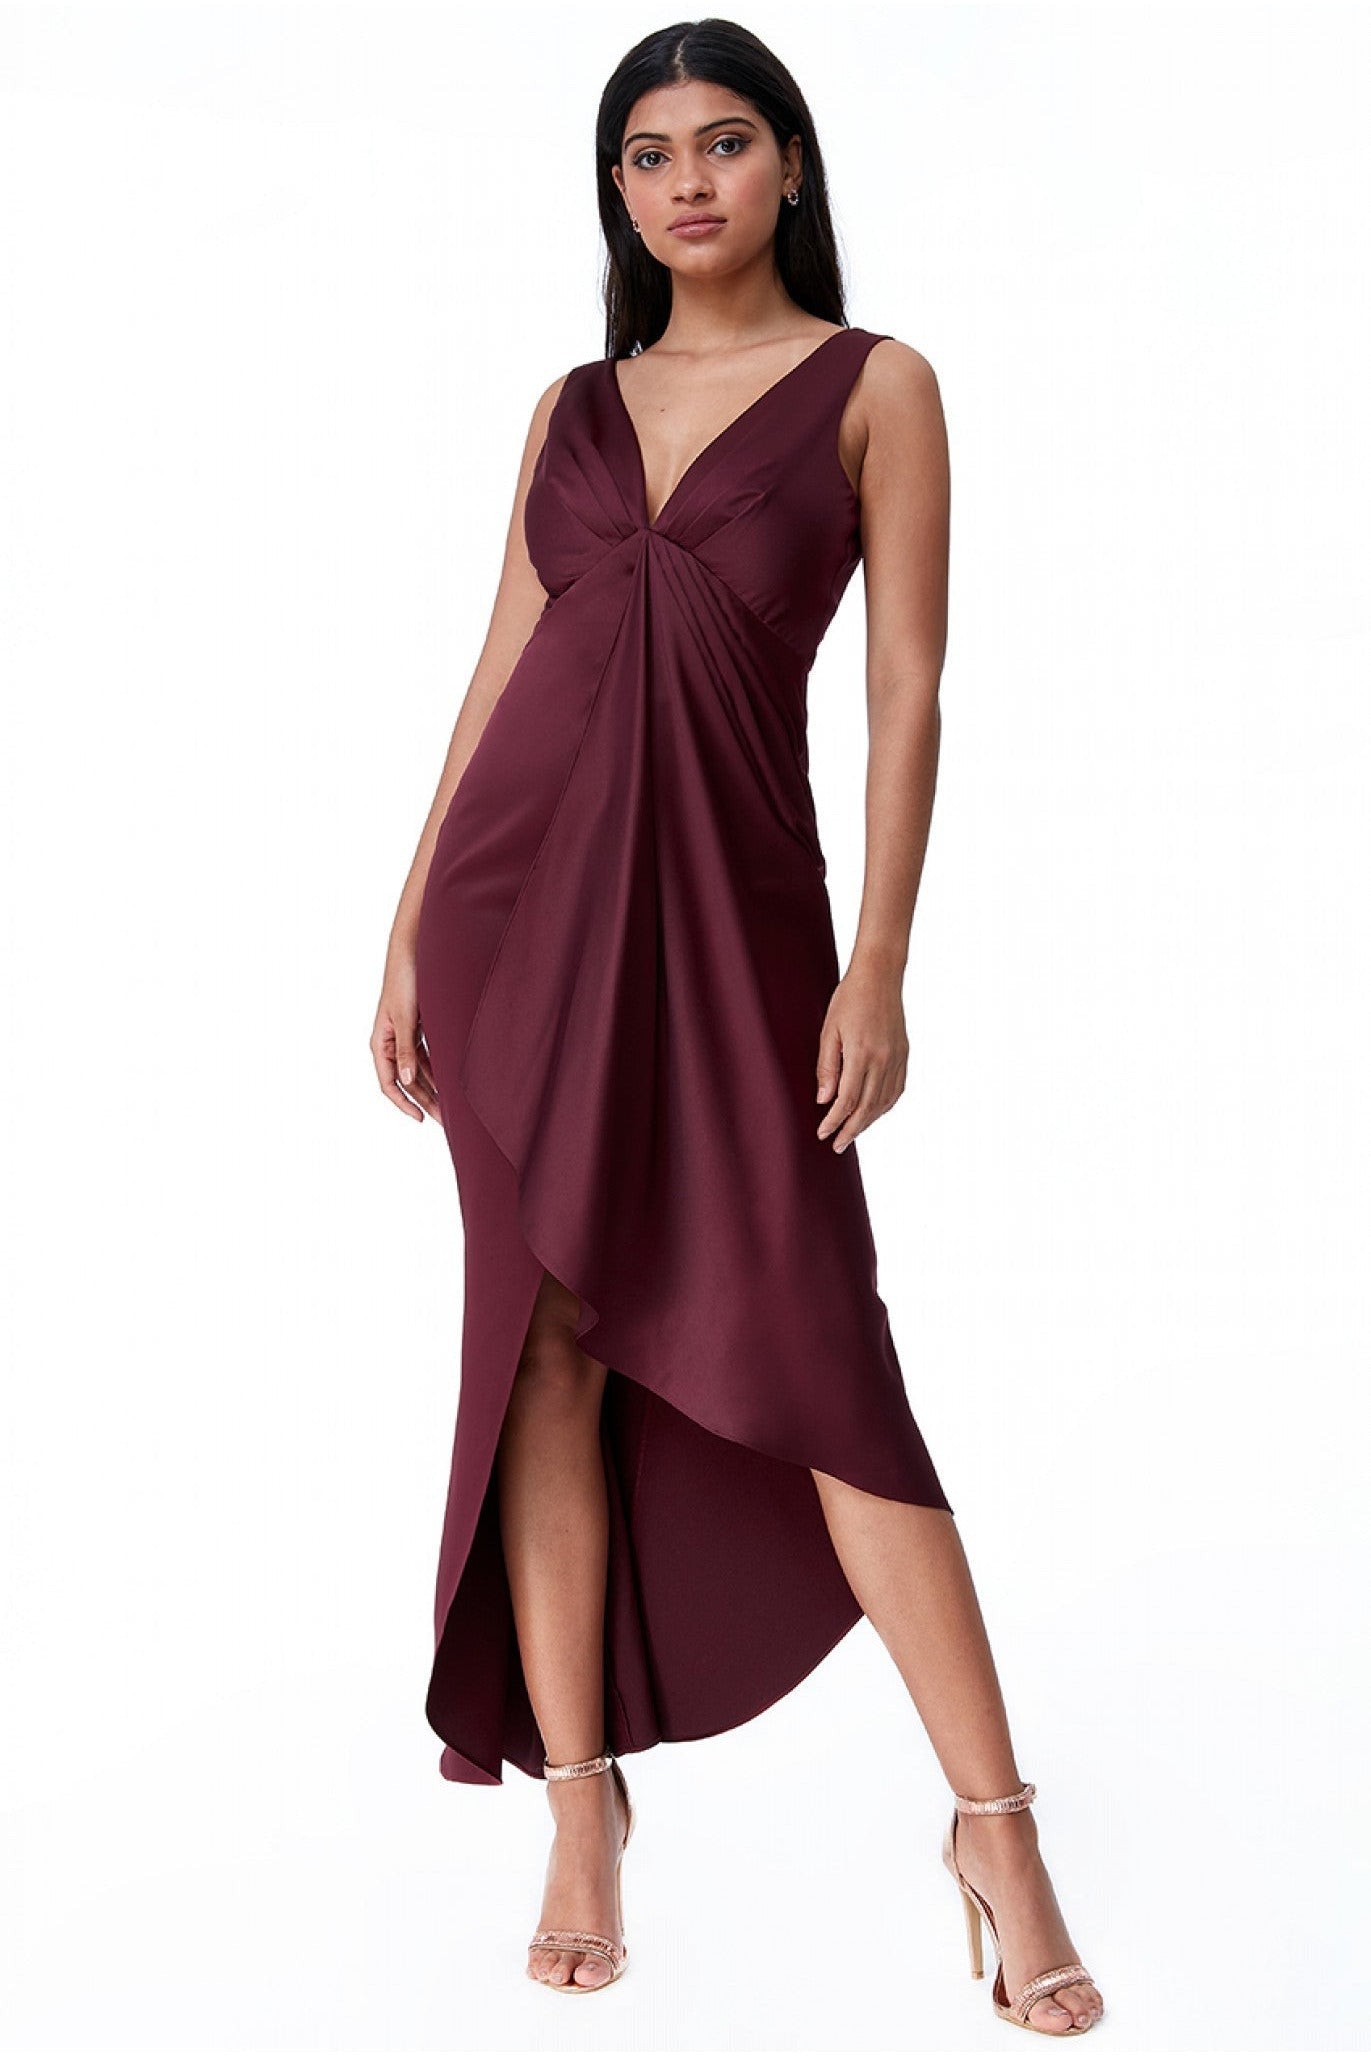 Waterfall Satin Maxi Dress  - Wine DR2038